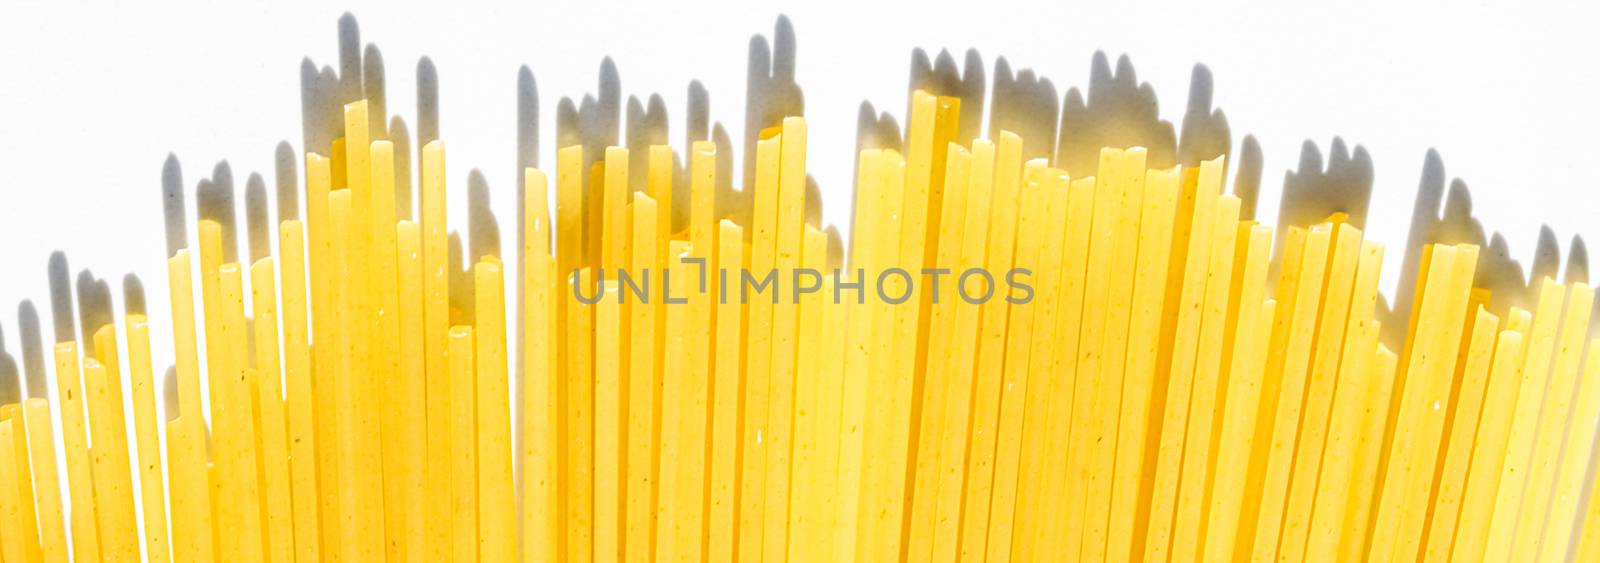 Uncooked whole grain spaghetti closeup, italian pasta as organic by Anneleven